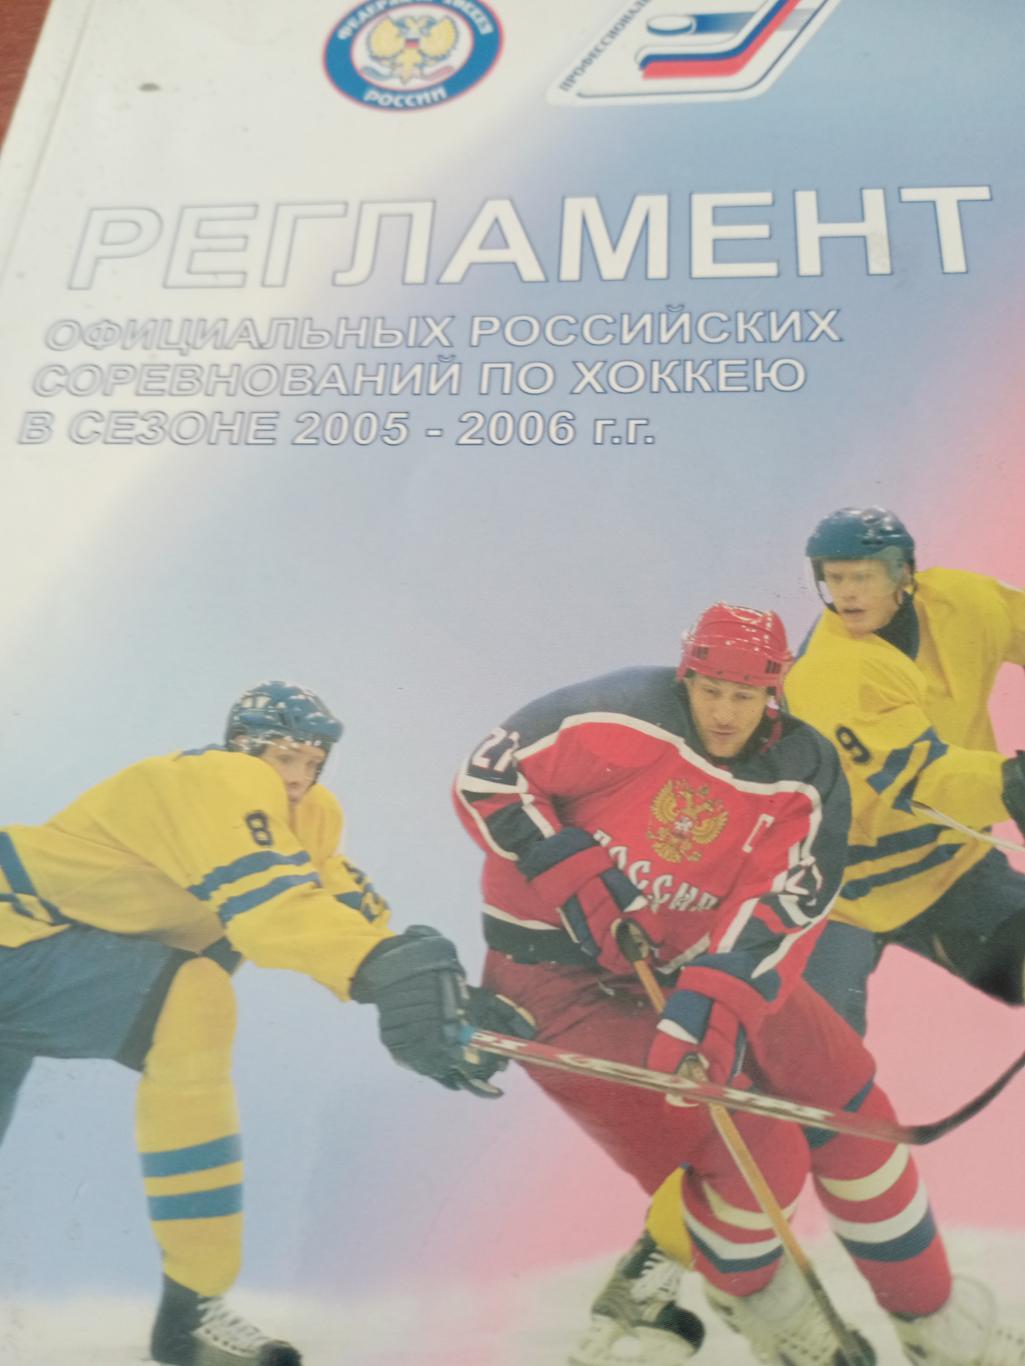 АКЦИЯ! Регламент российских соревнований по хоккею Сезон-2005/2006 гг.